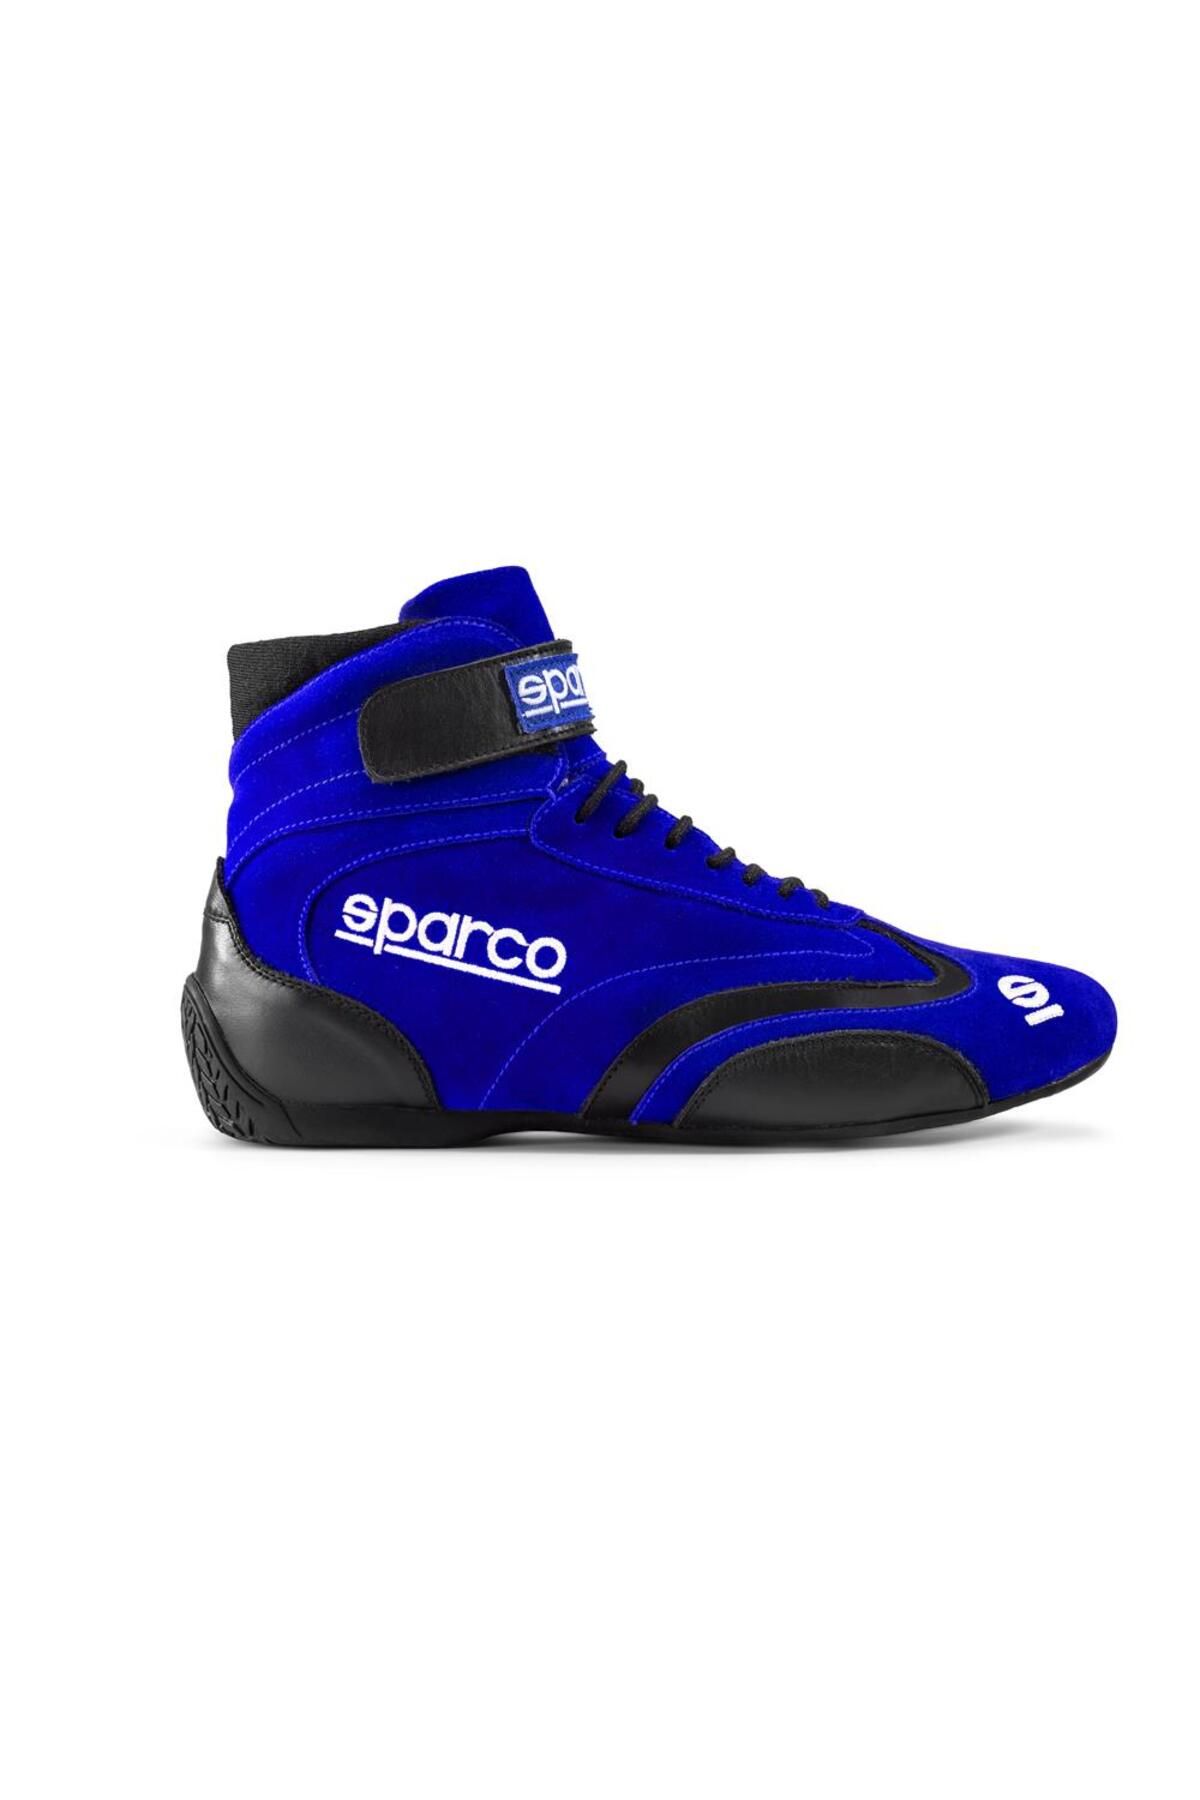 Sparco Top Yarış Ayakkabısı Fia Onaylı Mavi 41 Numara